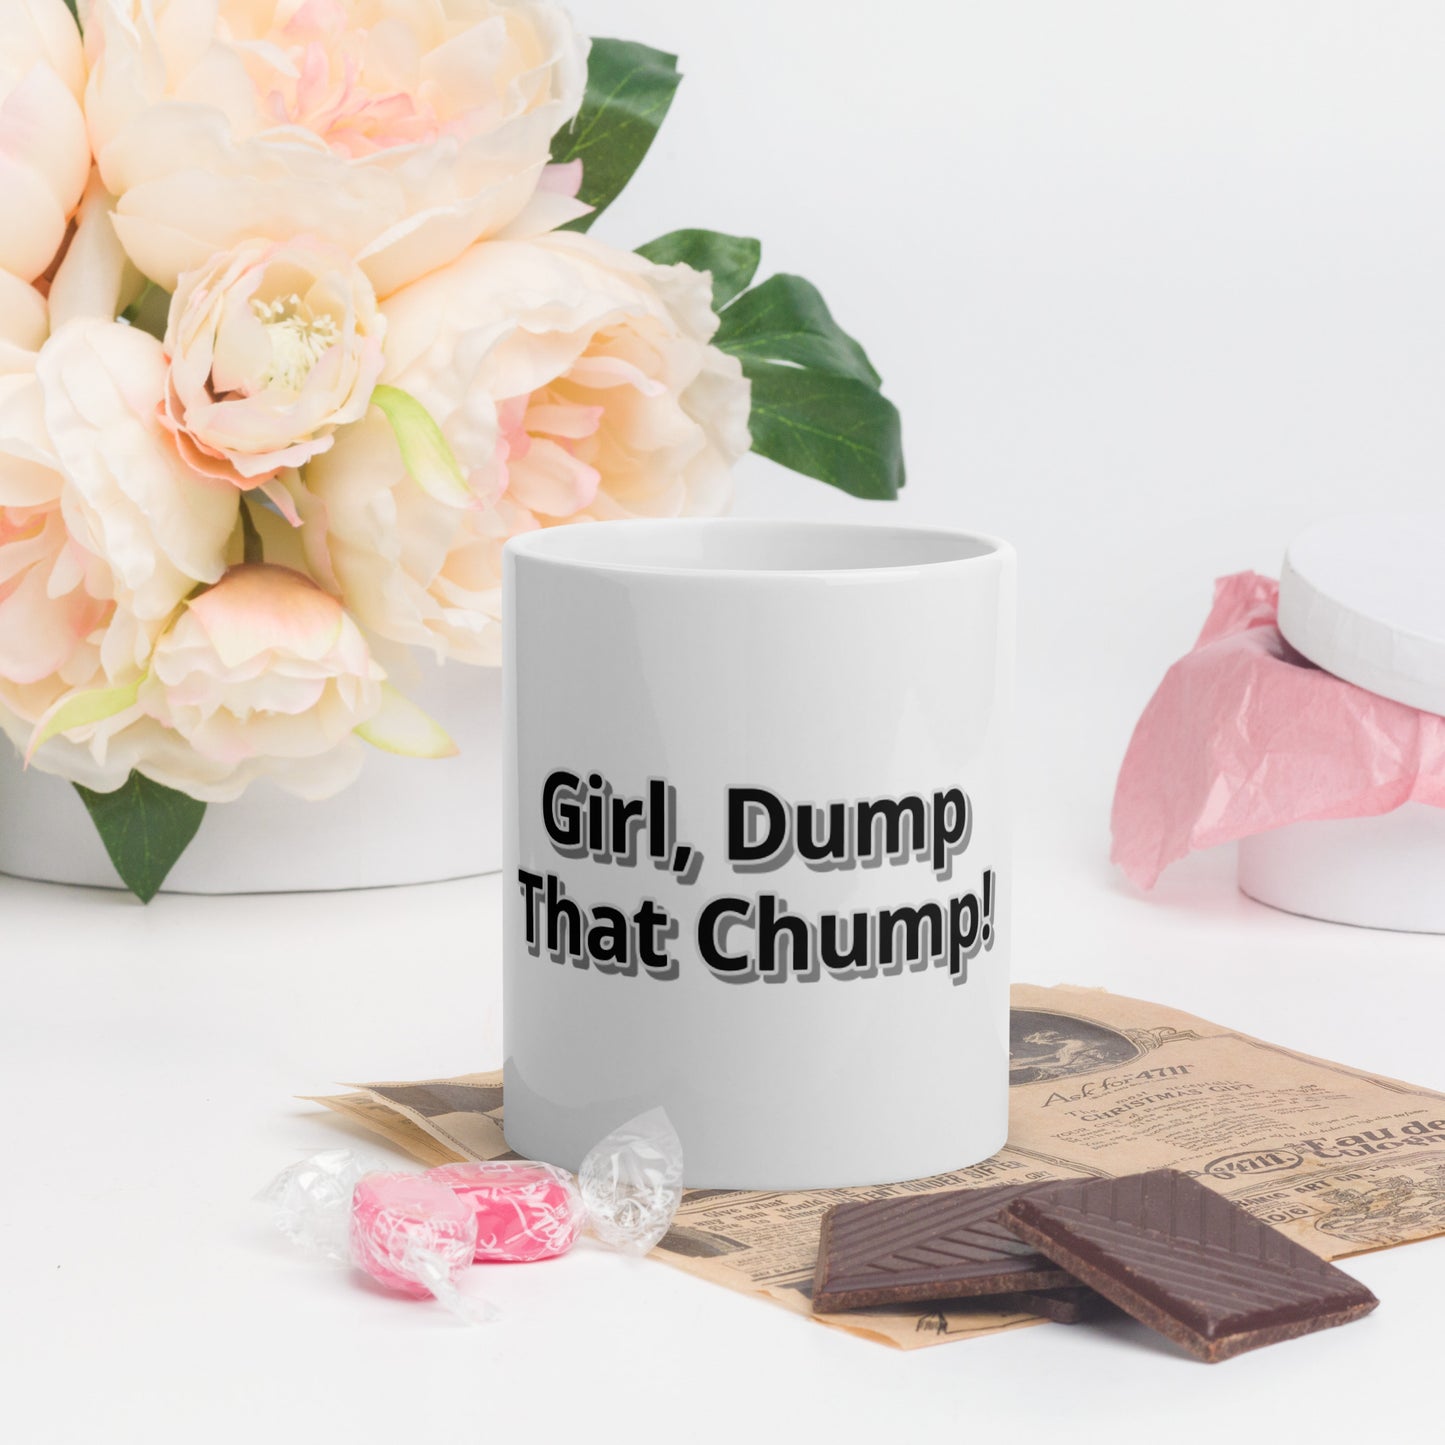 Girl, Dump That Chump! White glossy mug